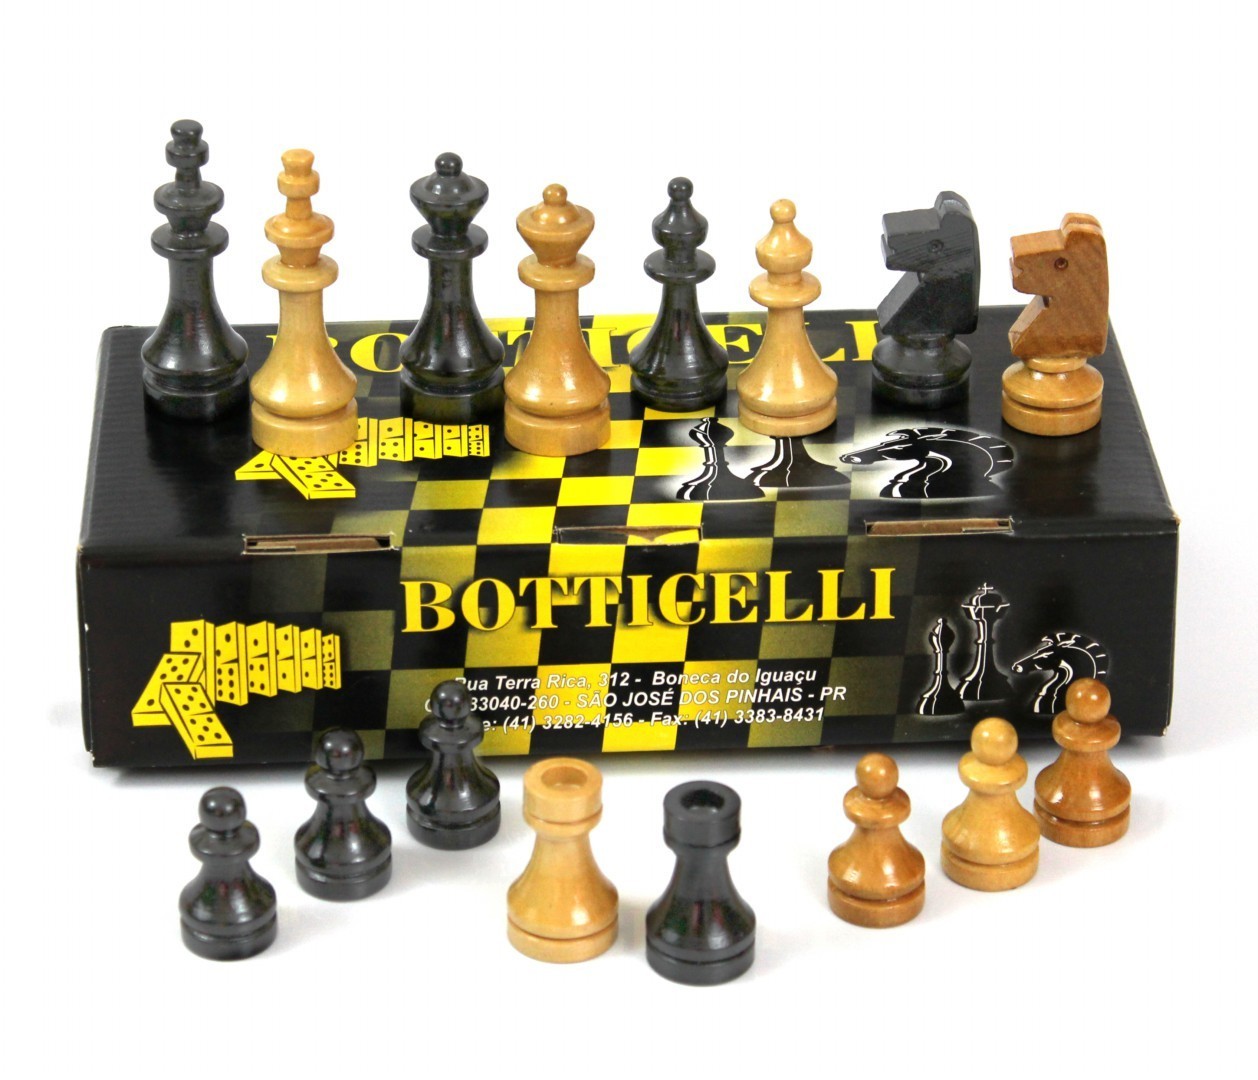 32 peça de madeira peças de xadrez internacionais conjunto sem